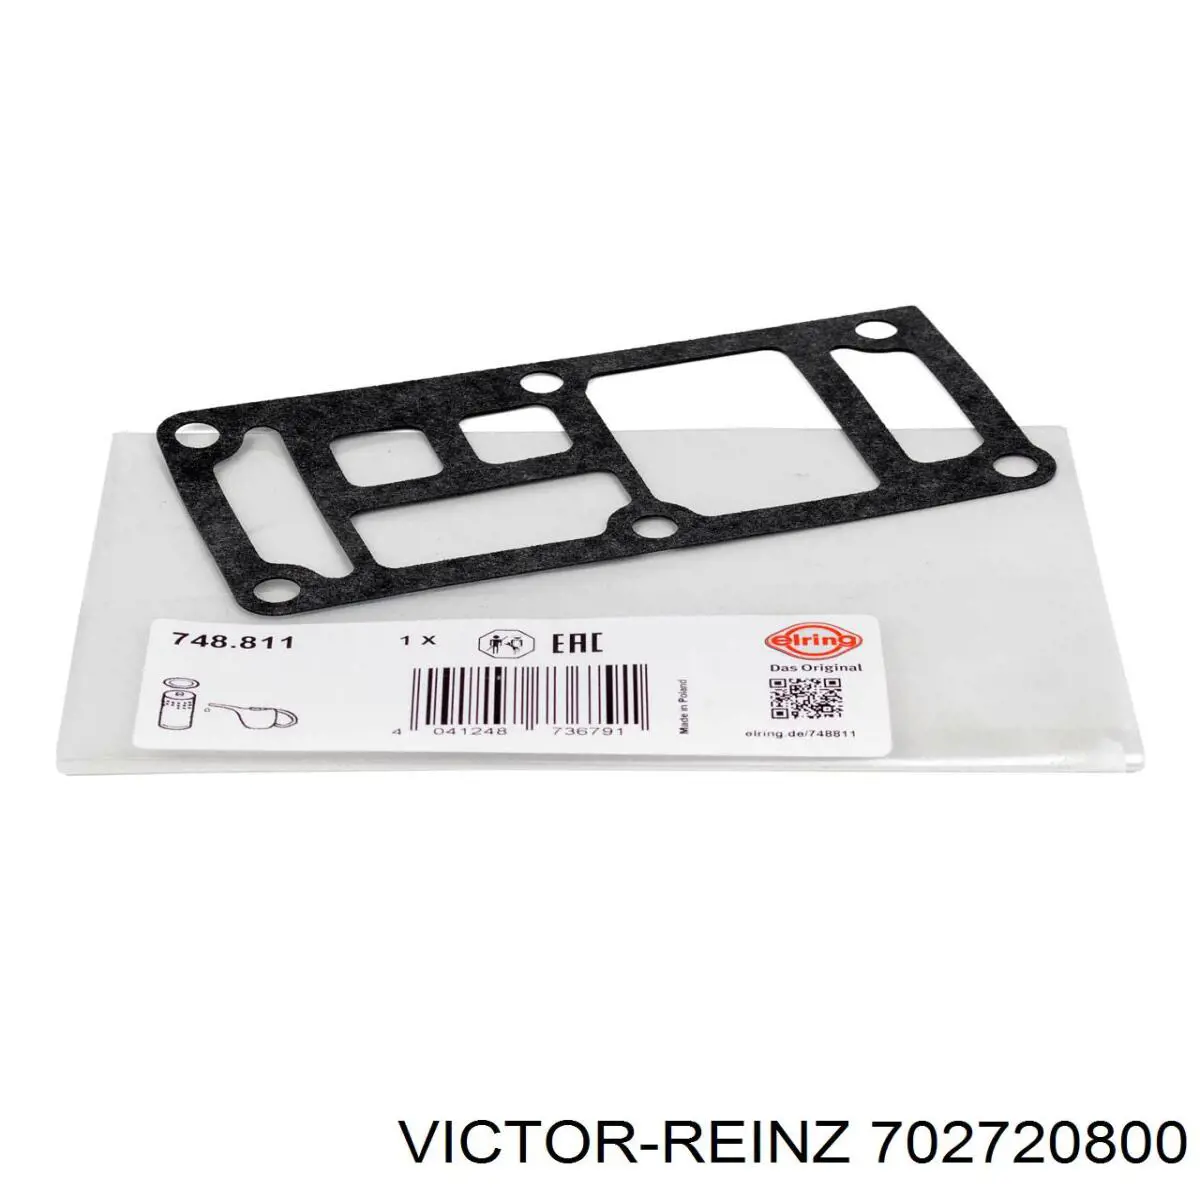 702720800 Victor Reinz junta, adaptador de filtro de aceite